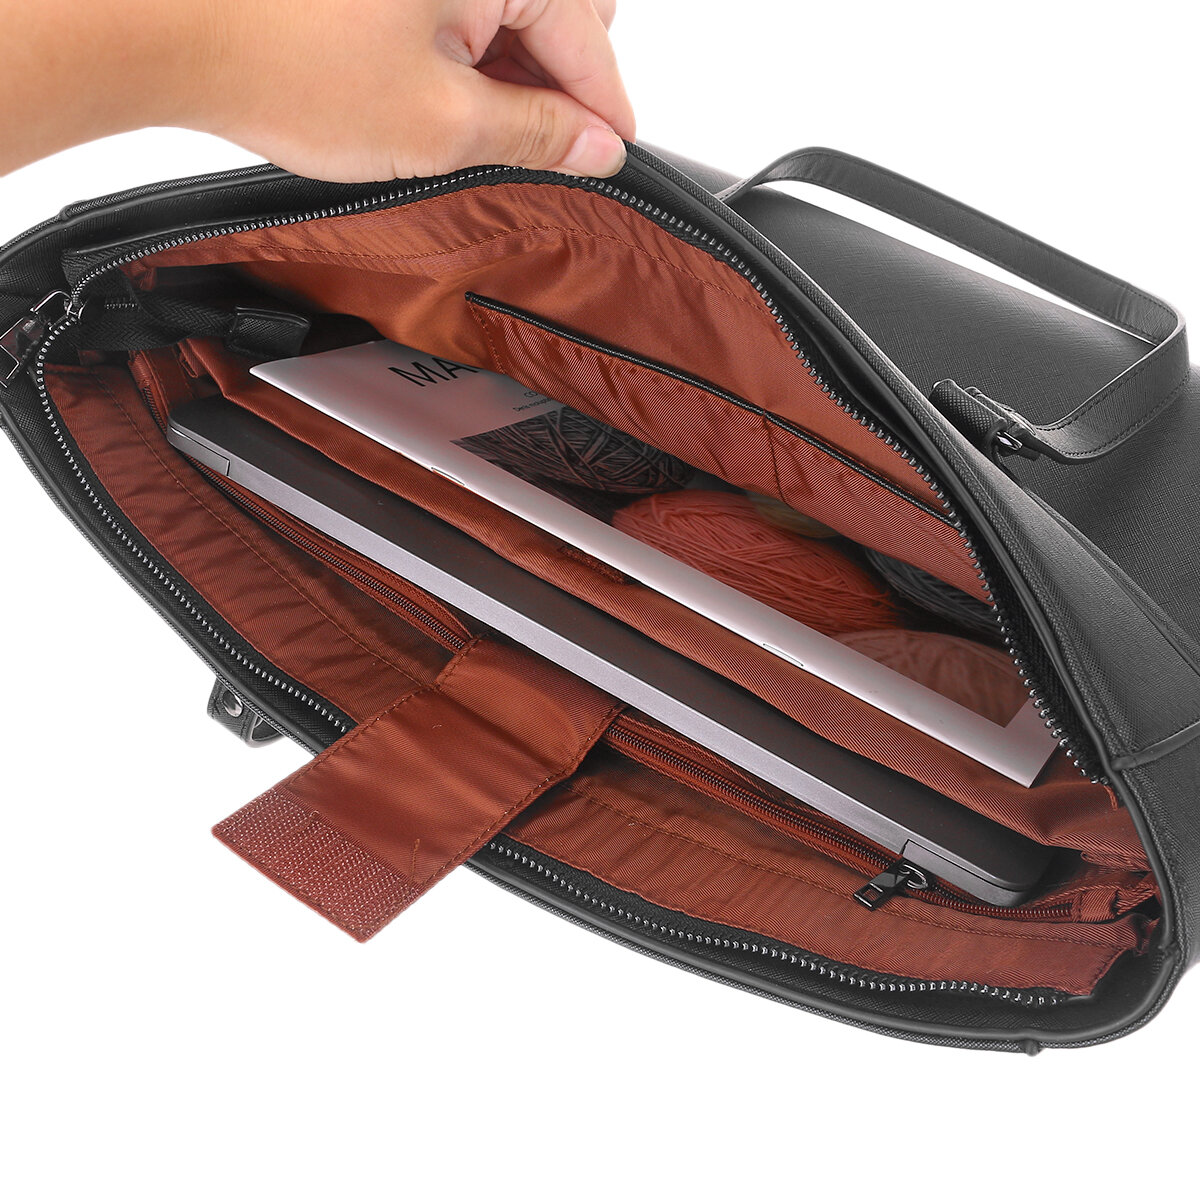 21inch-Laptop-Bag-Business-Shoulder-Bag-Casual-Handbag-1707880-1